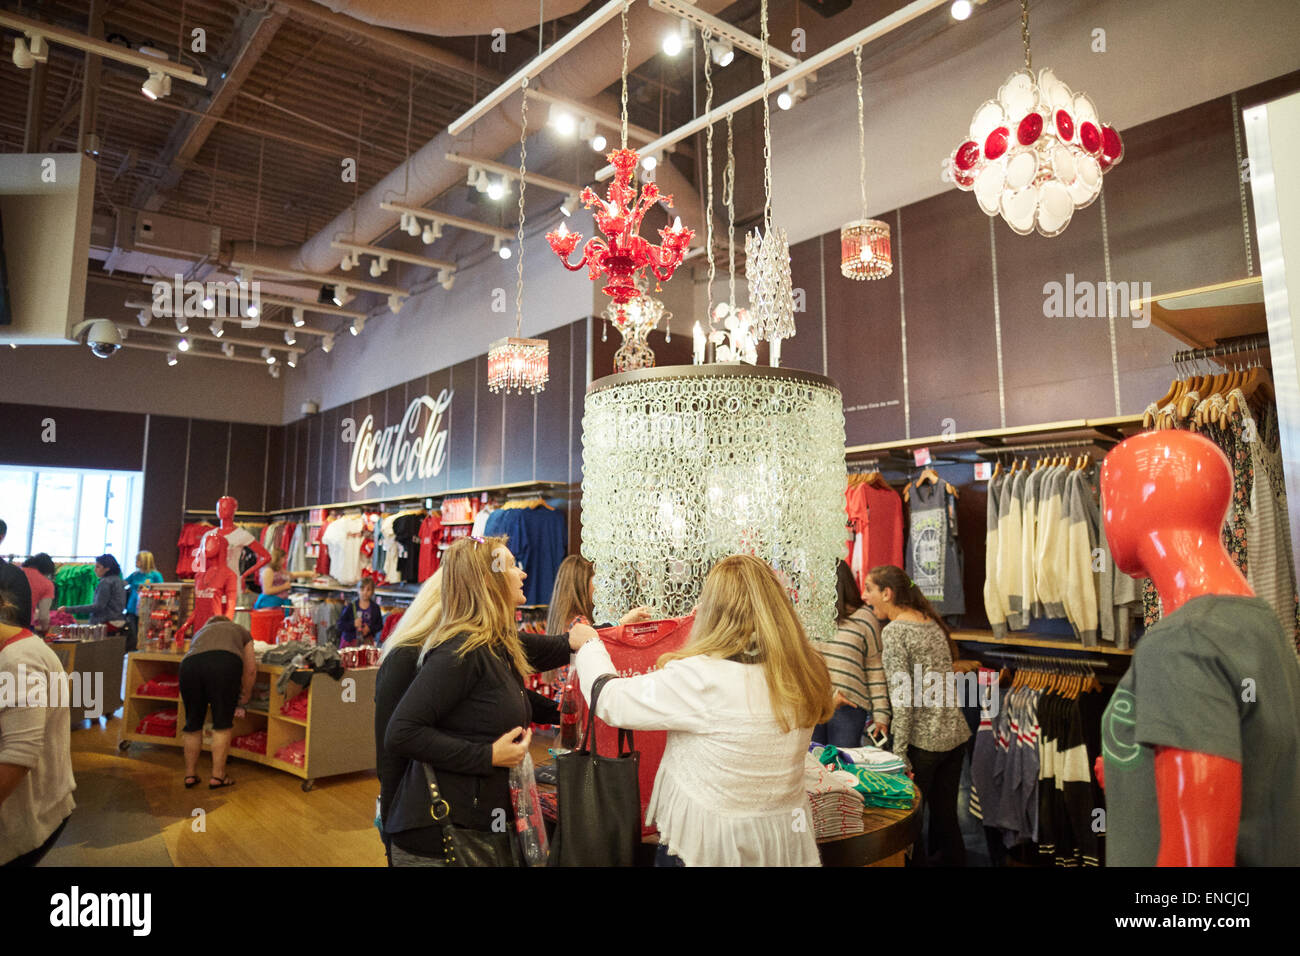 `Downtown Atlanta in Georga USA  Coca-Cola - Coca Cola World  interior of the gift shop store attraction Stock Photo